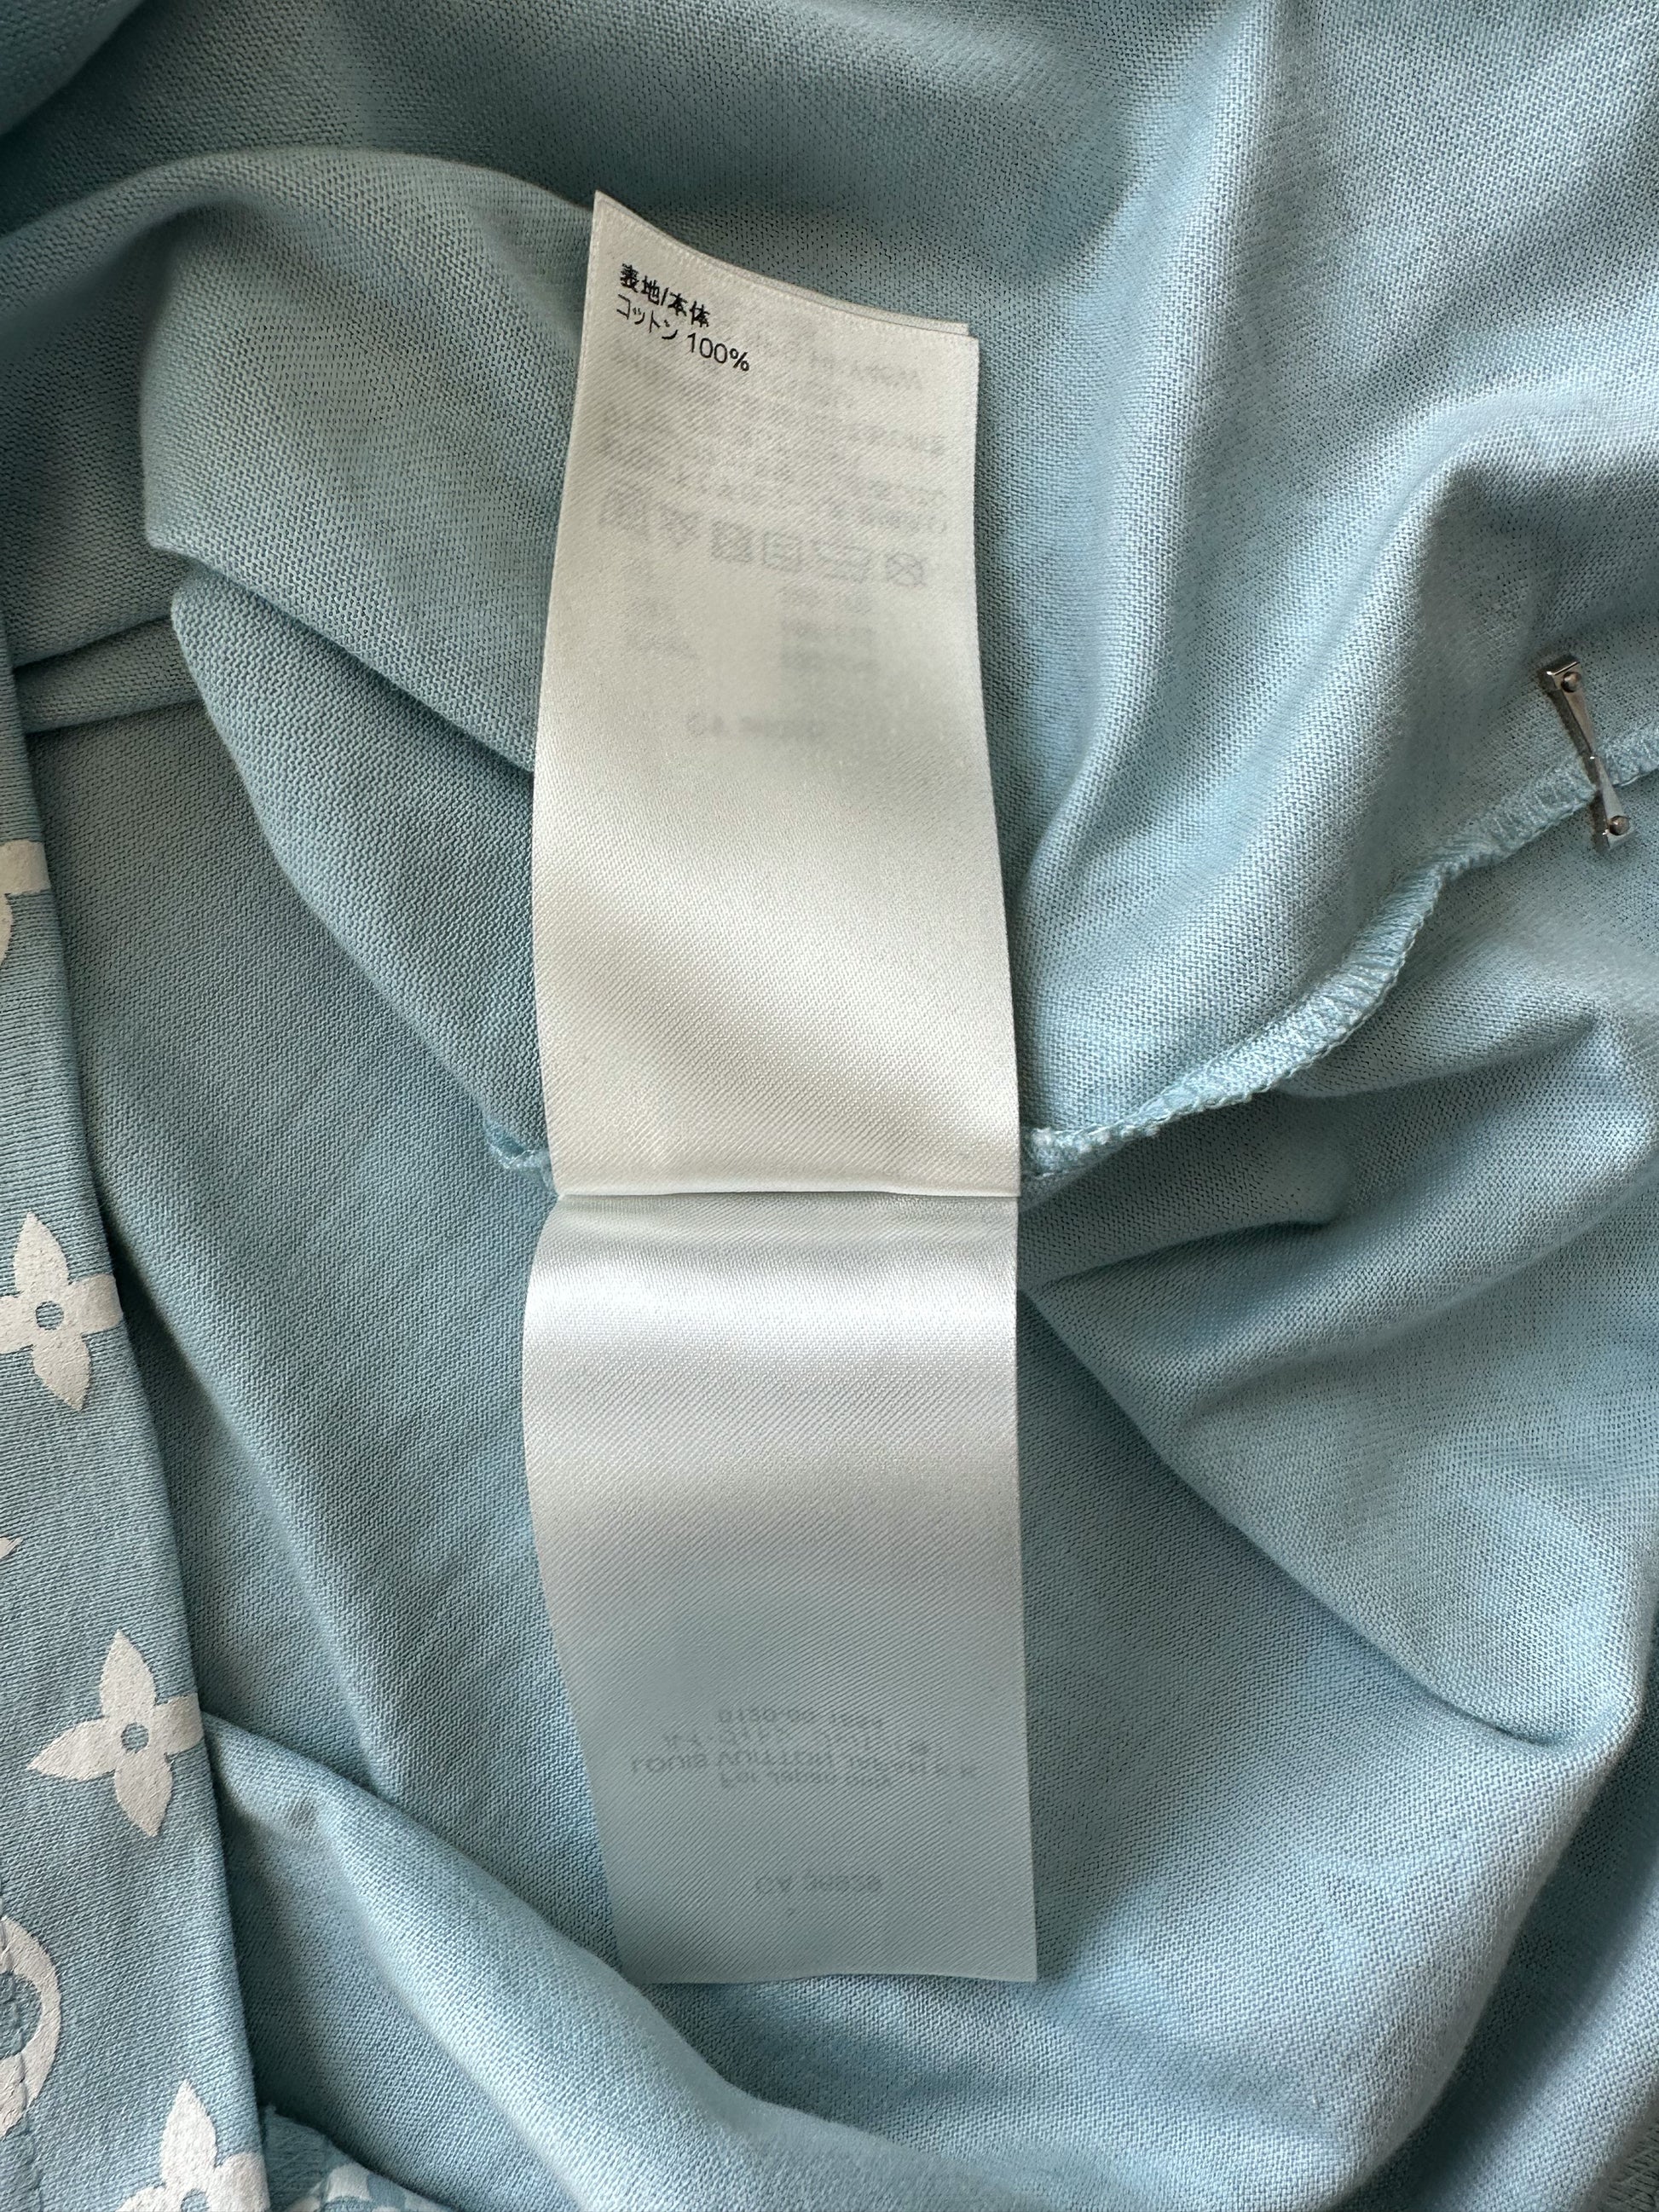 Louis Vuitton Blue Gradient Monogram Print Cotton Short Sleeve T-Shirt M -  ShopStyle